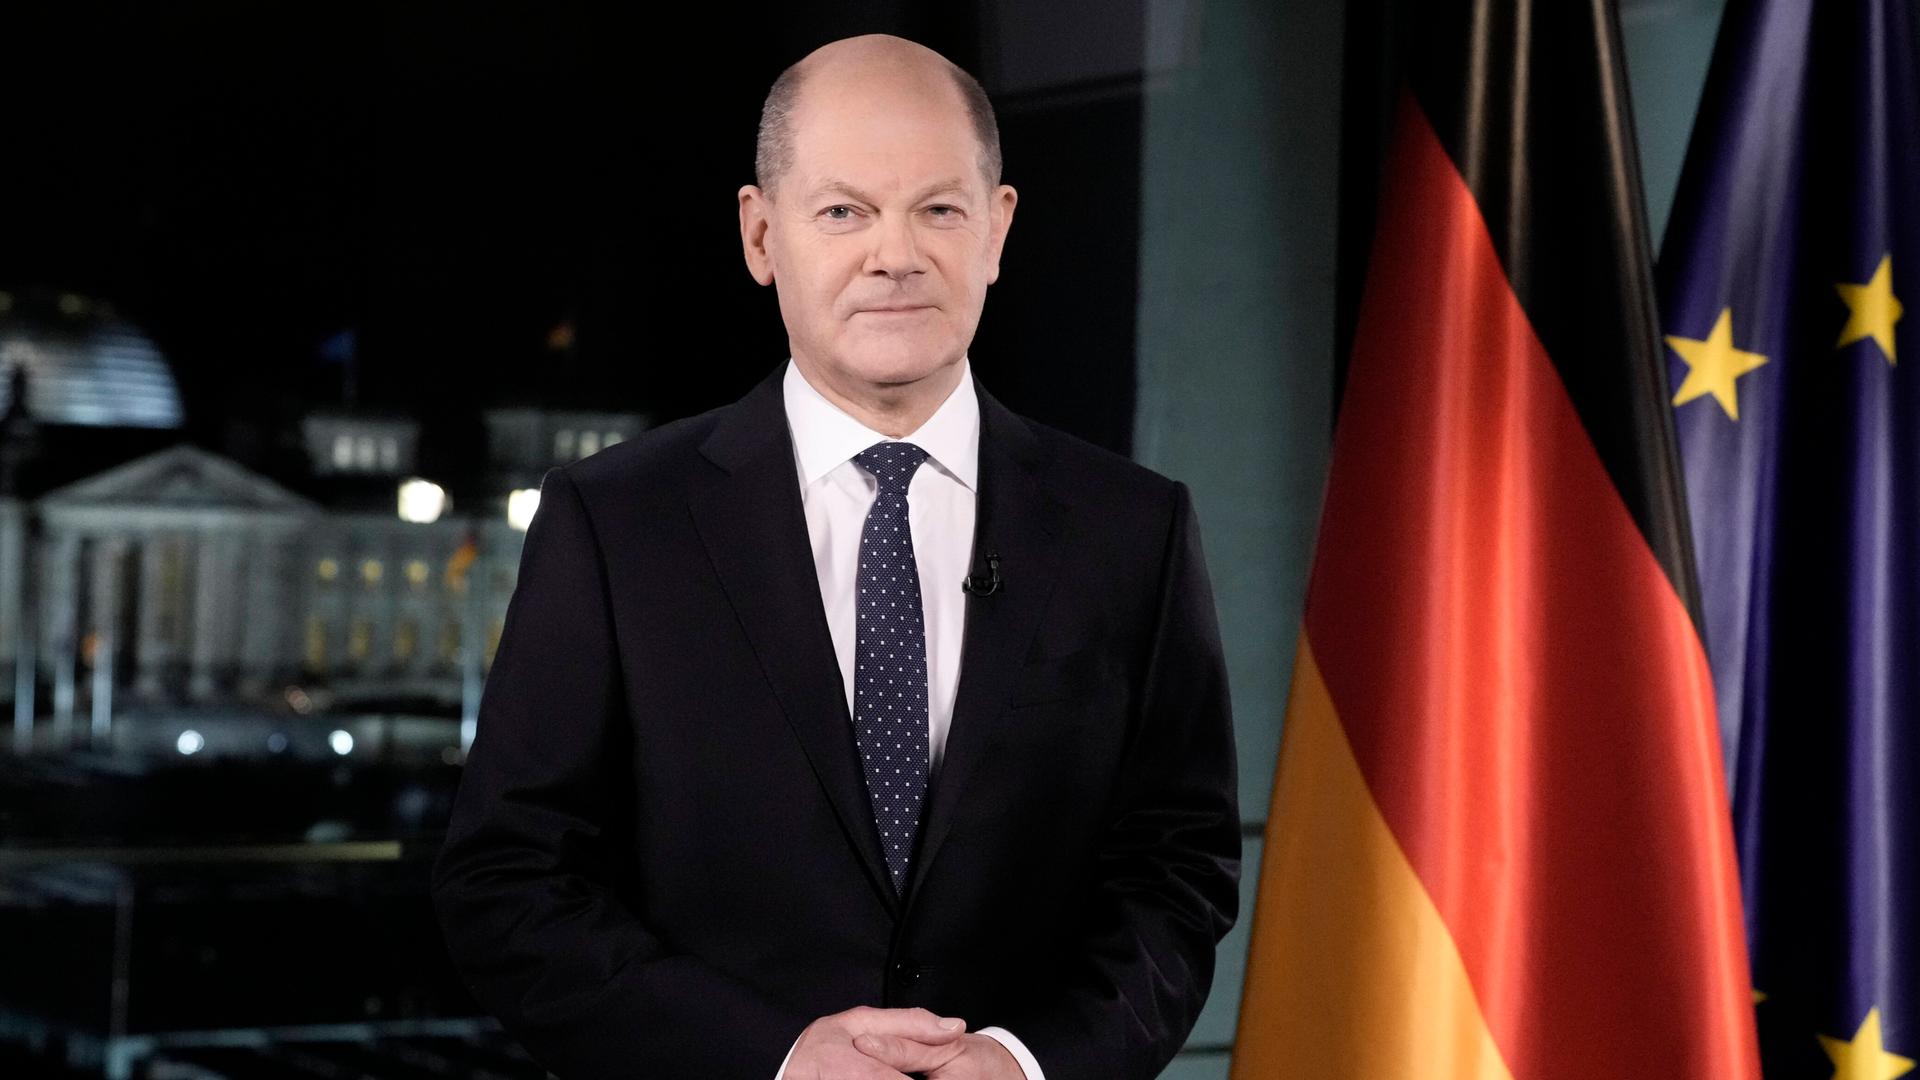 Bundeskanzler Olaf Scholz steht während seiner Neujahrsansprache vor den Flaggen Deutschlands und der EU.